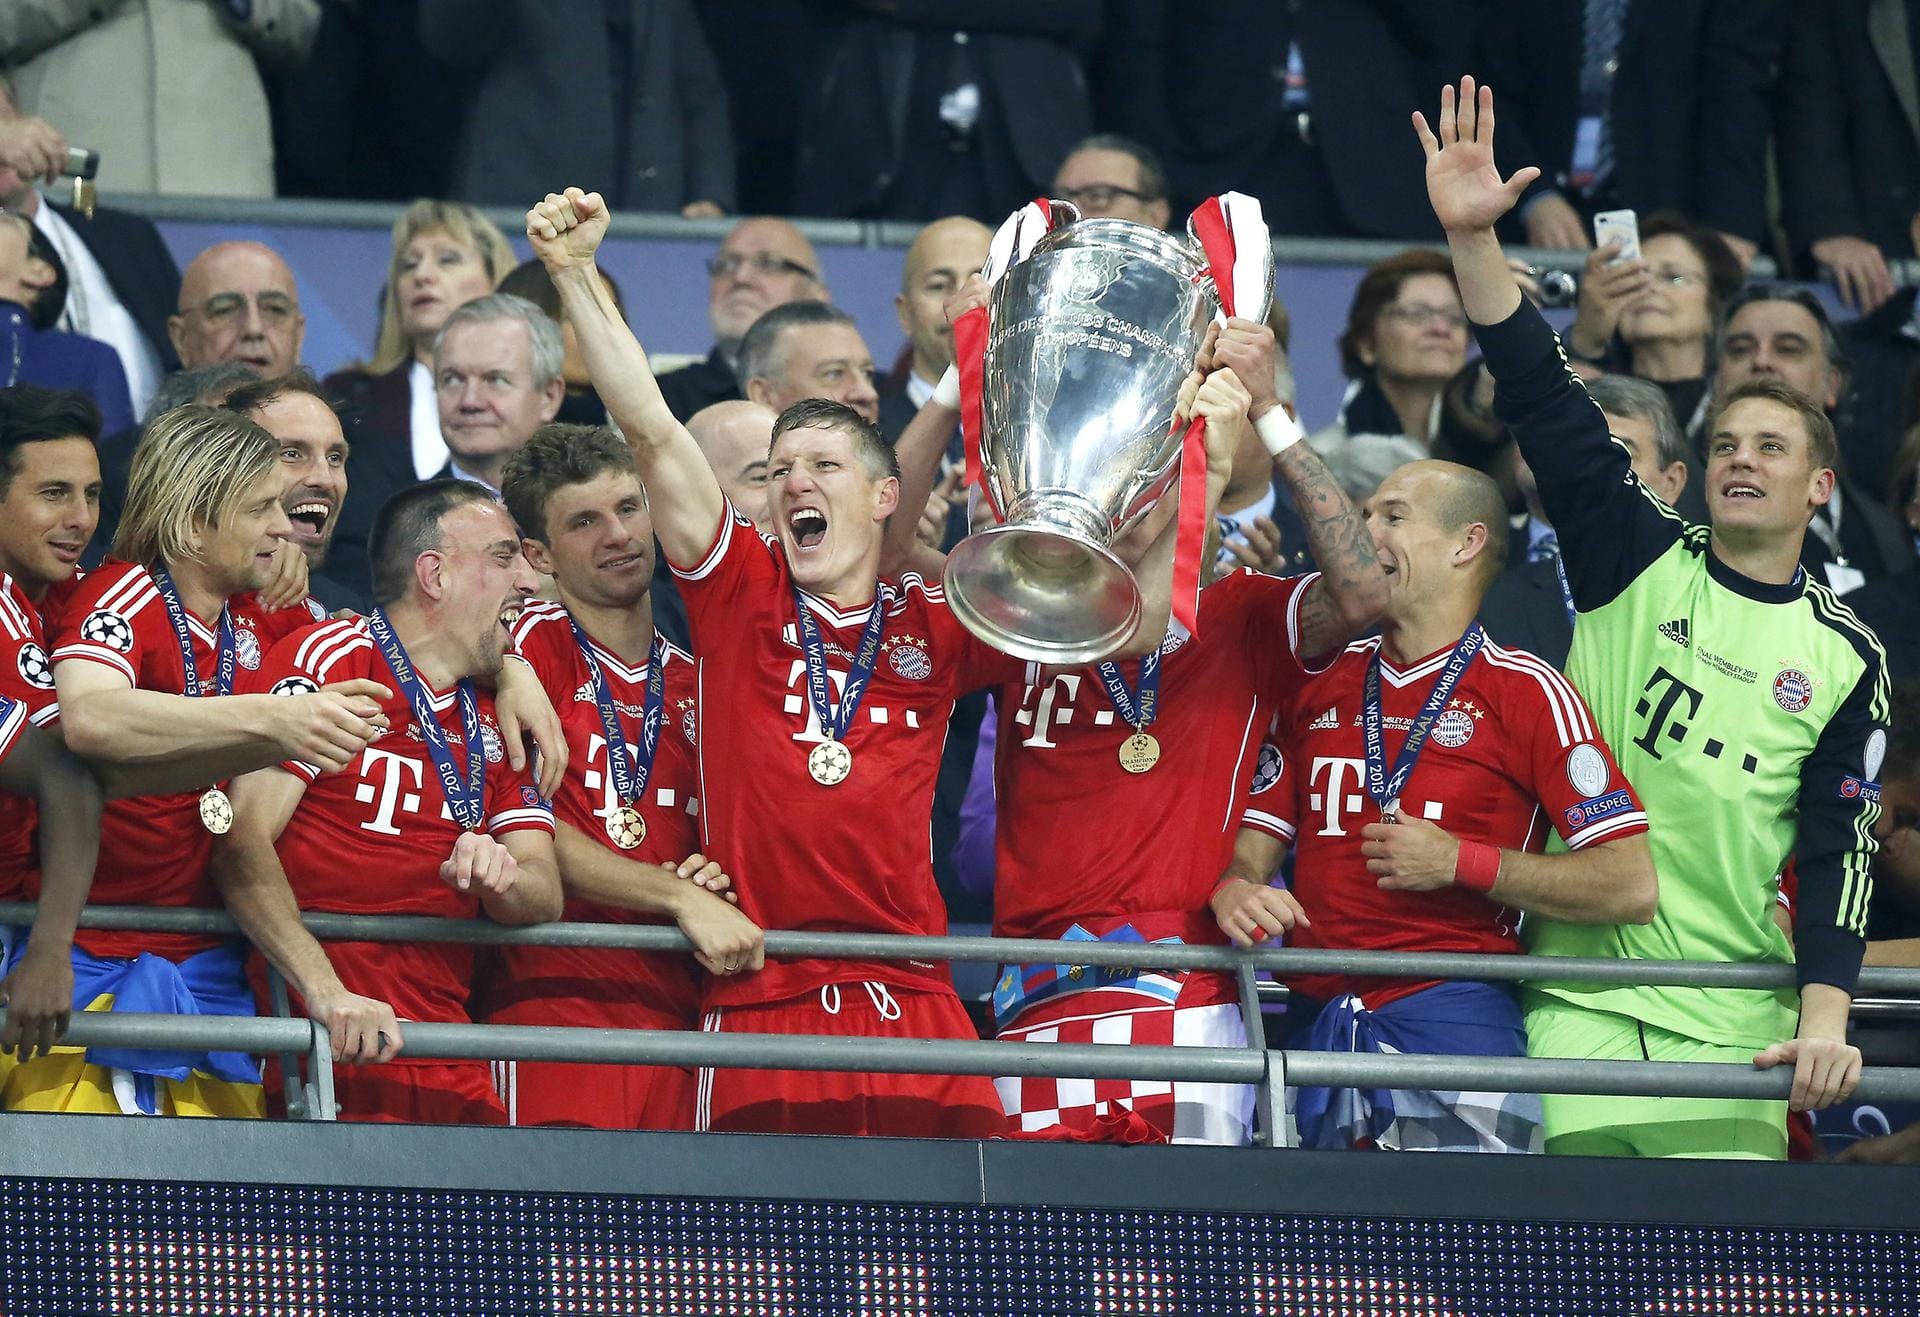 Ein Jahr später war es aber soweit: Gegen den Überraschungs-Finalisten aus Dortmund gewannen die Bayern mit Schweinsteiger als Mittelfeld-Strategen im Wembley-Stadion 2013 den Henkelpott.